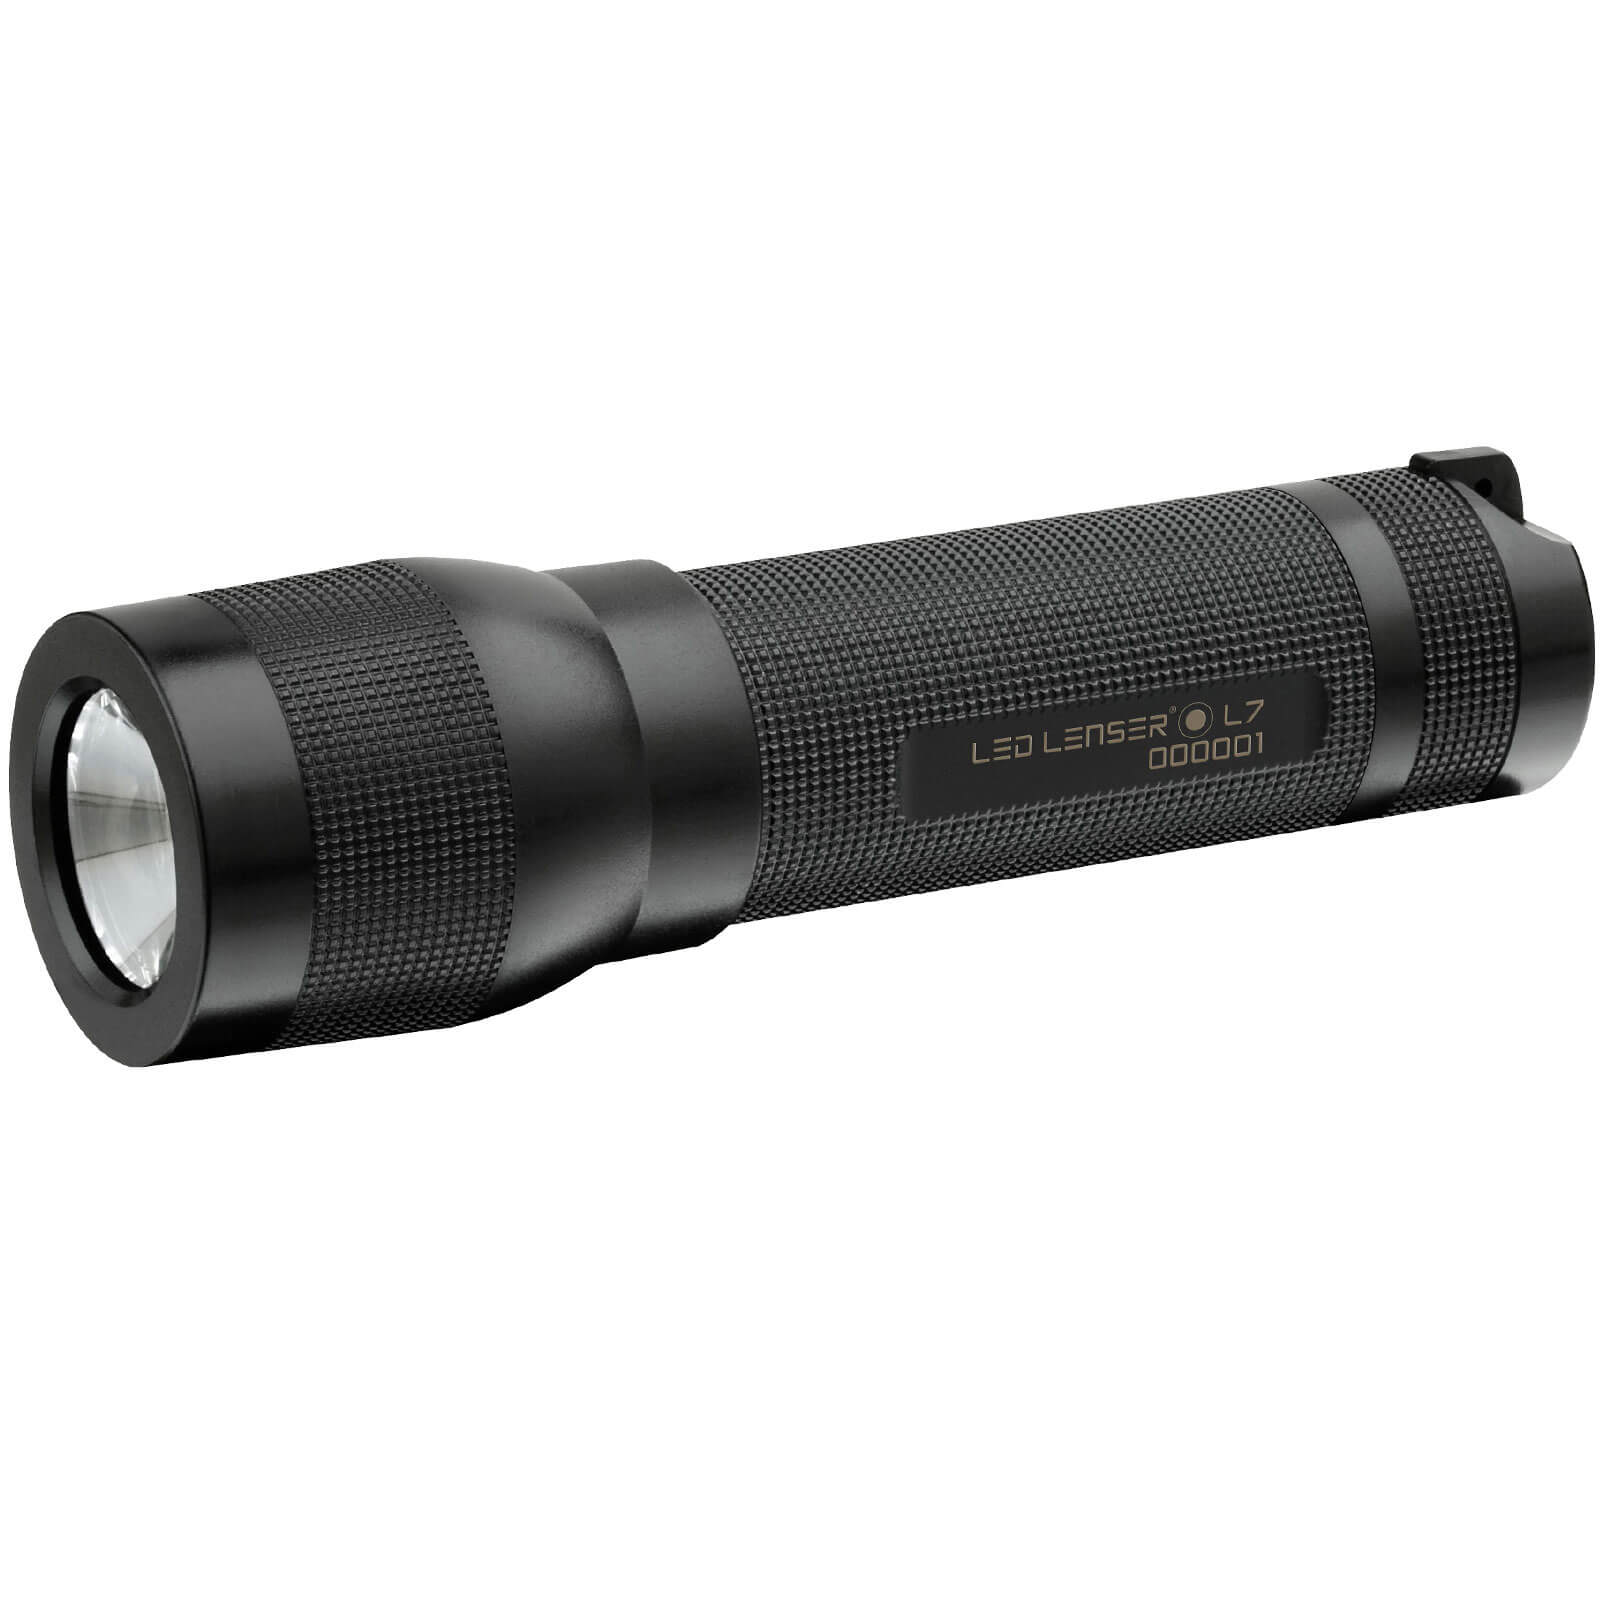 LED Lenser L7 Lightweight Torch Titanium 115 Lumens Size 2 x AAA Batteries